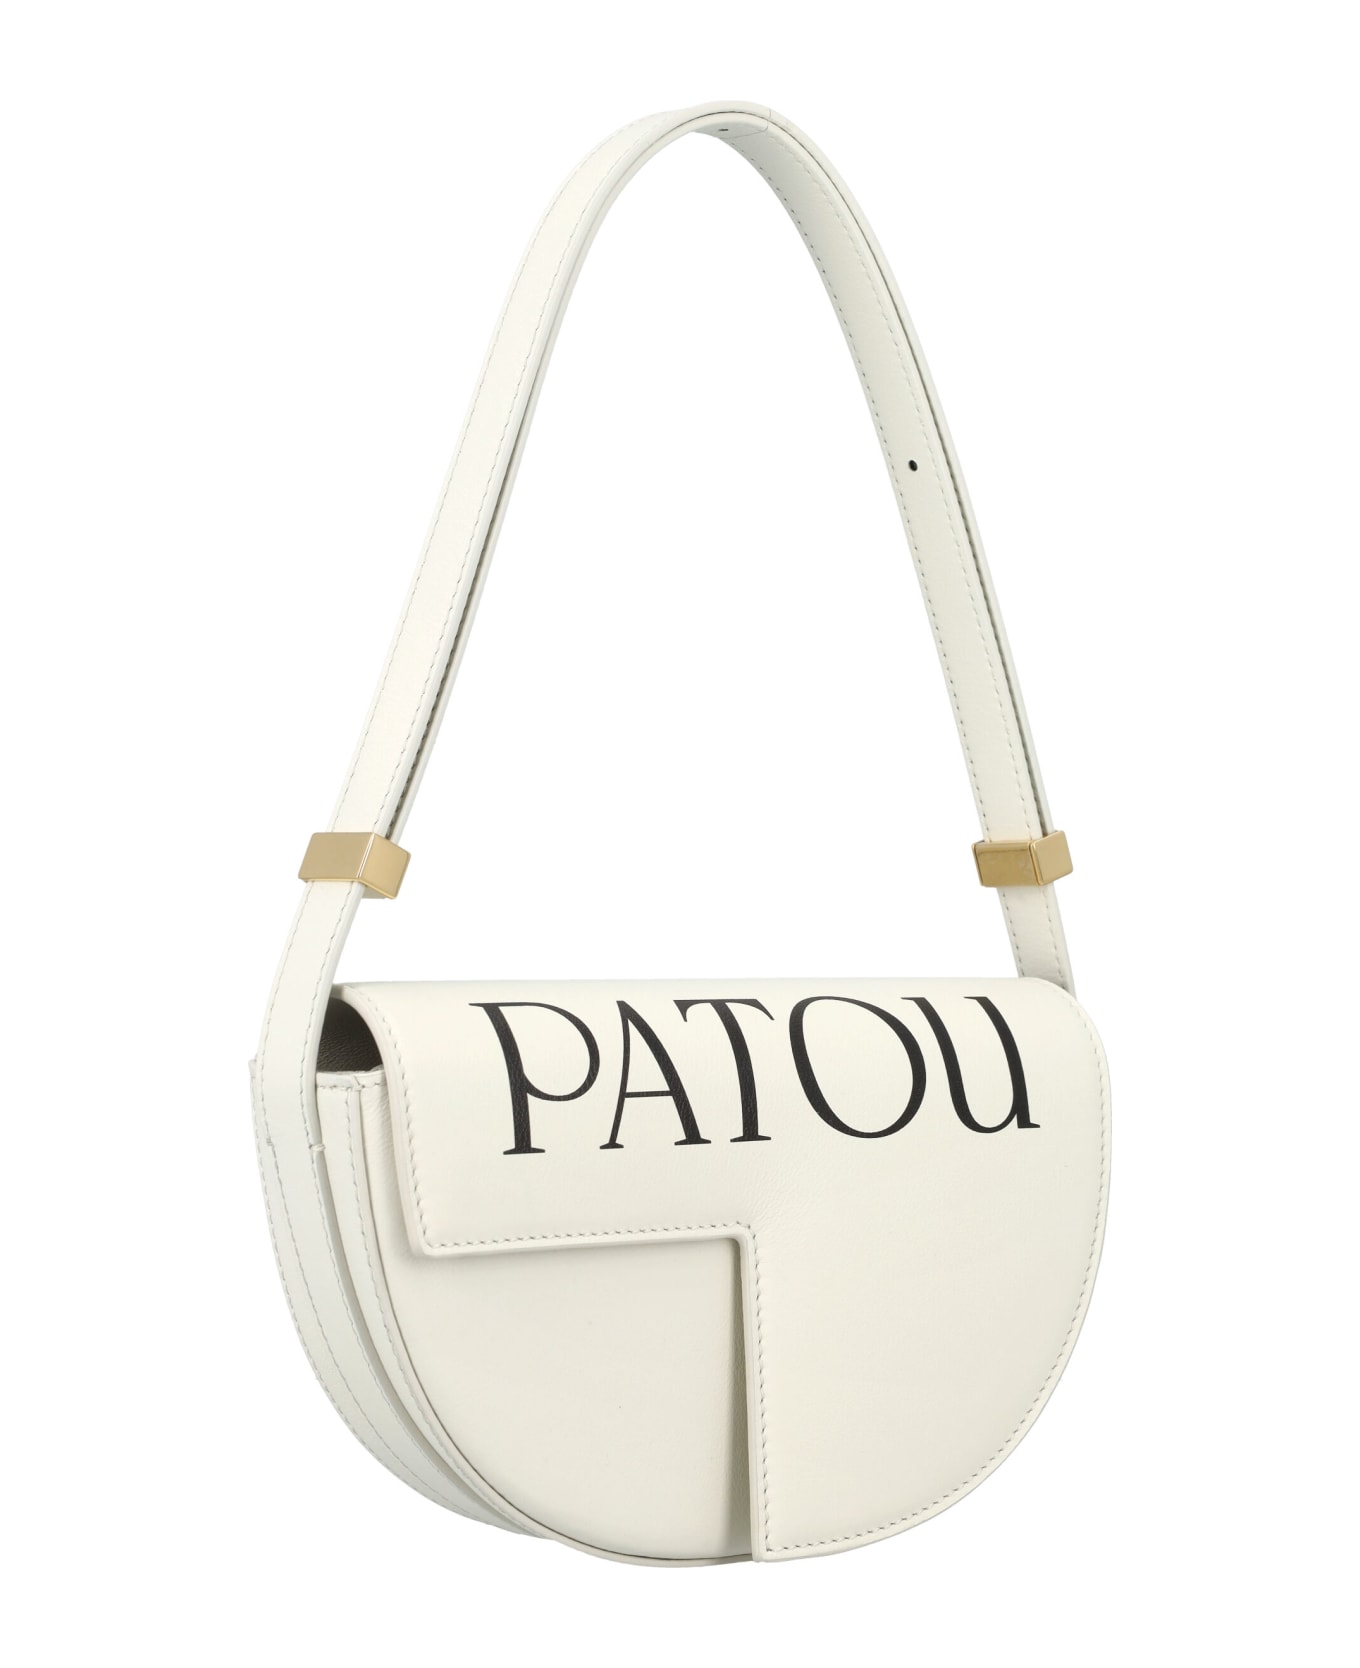 Patou Le Petit Patou Logo Bag - WHITE BLACK